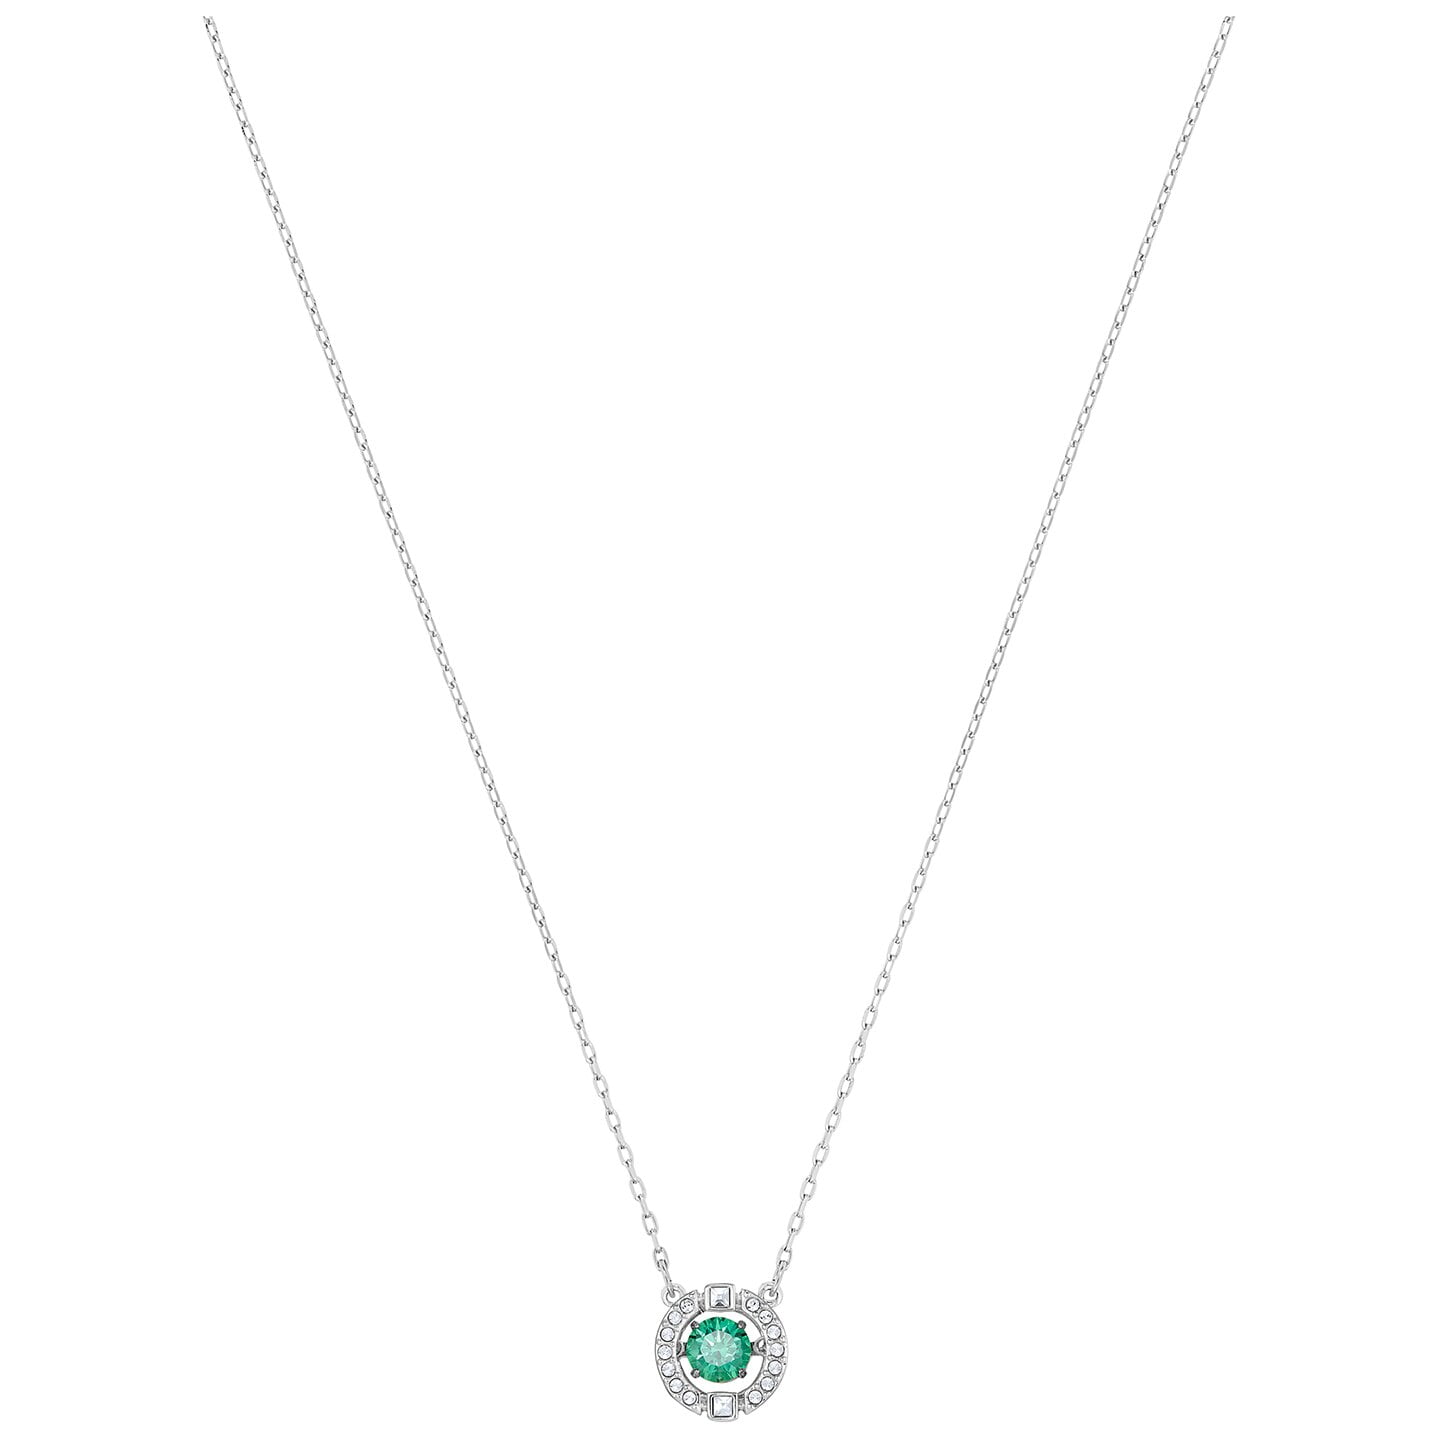 Swarovski Sparkling Dance Necklace - Green - Rhodium Plated - 5496308